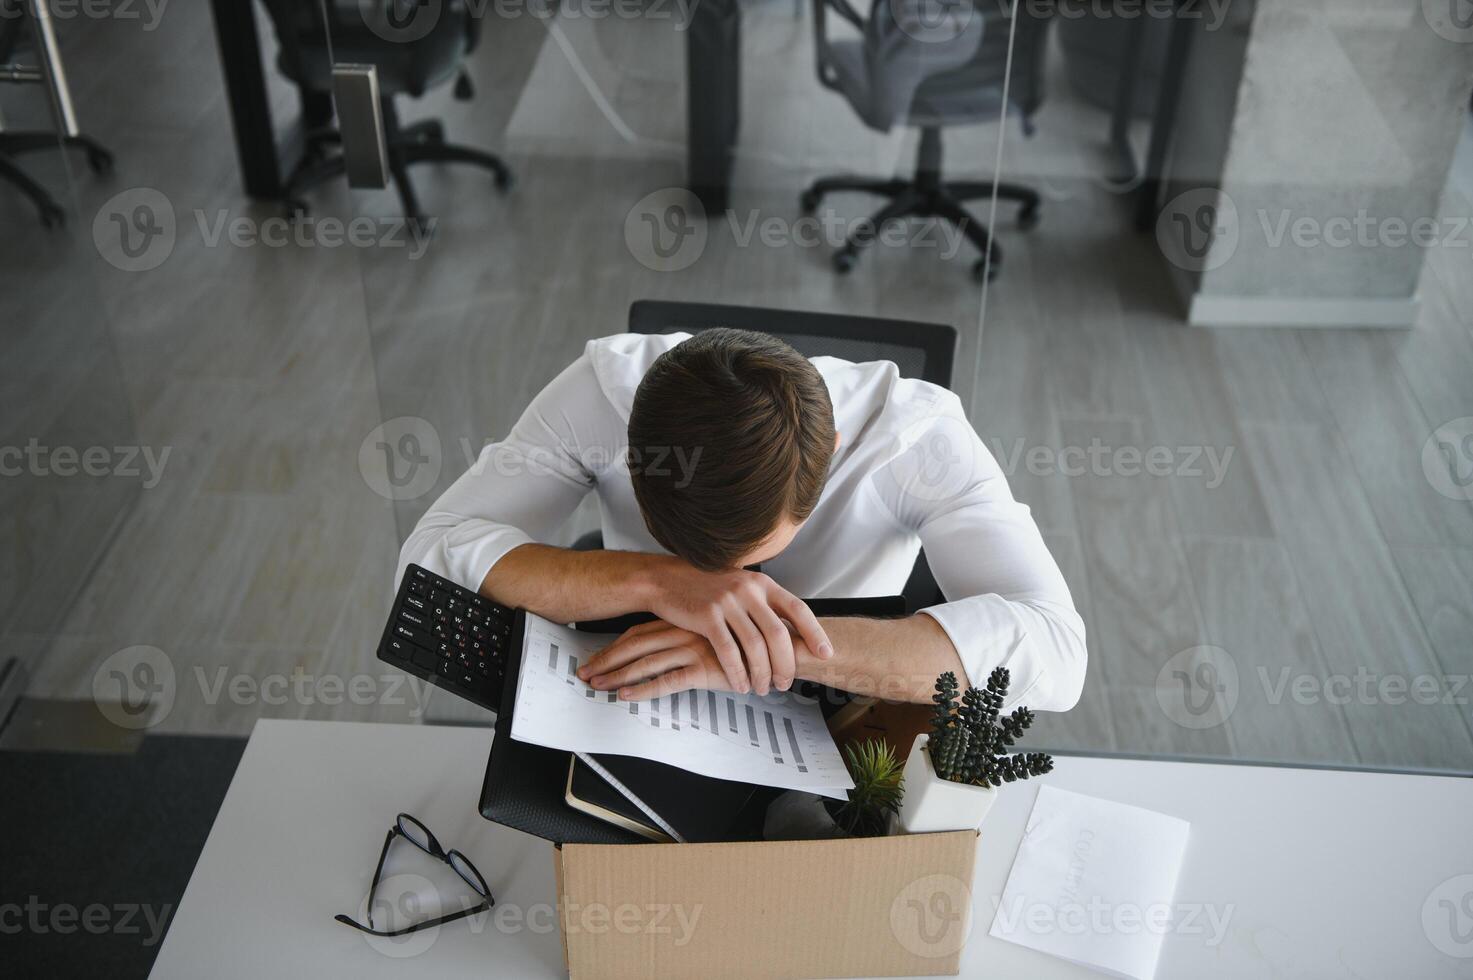 negocio, disparo y trabajo pérdida concepto - despedido masculino oficina trabajador con caja de su personal cosa. foto